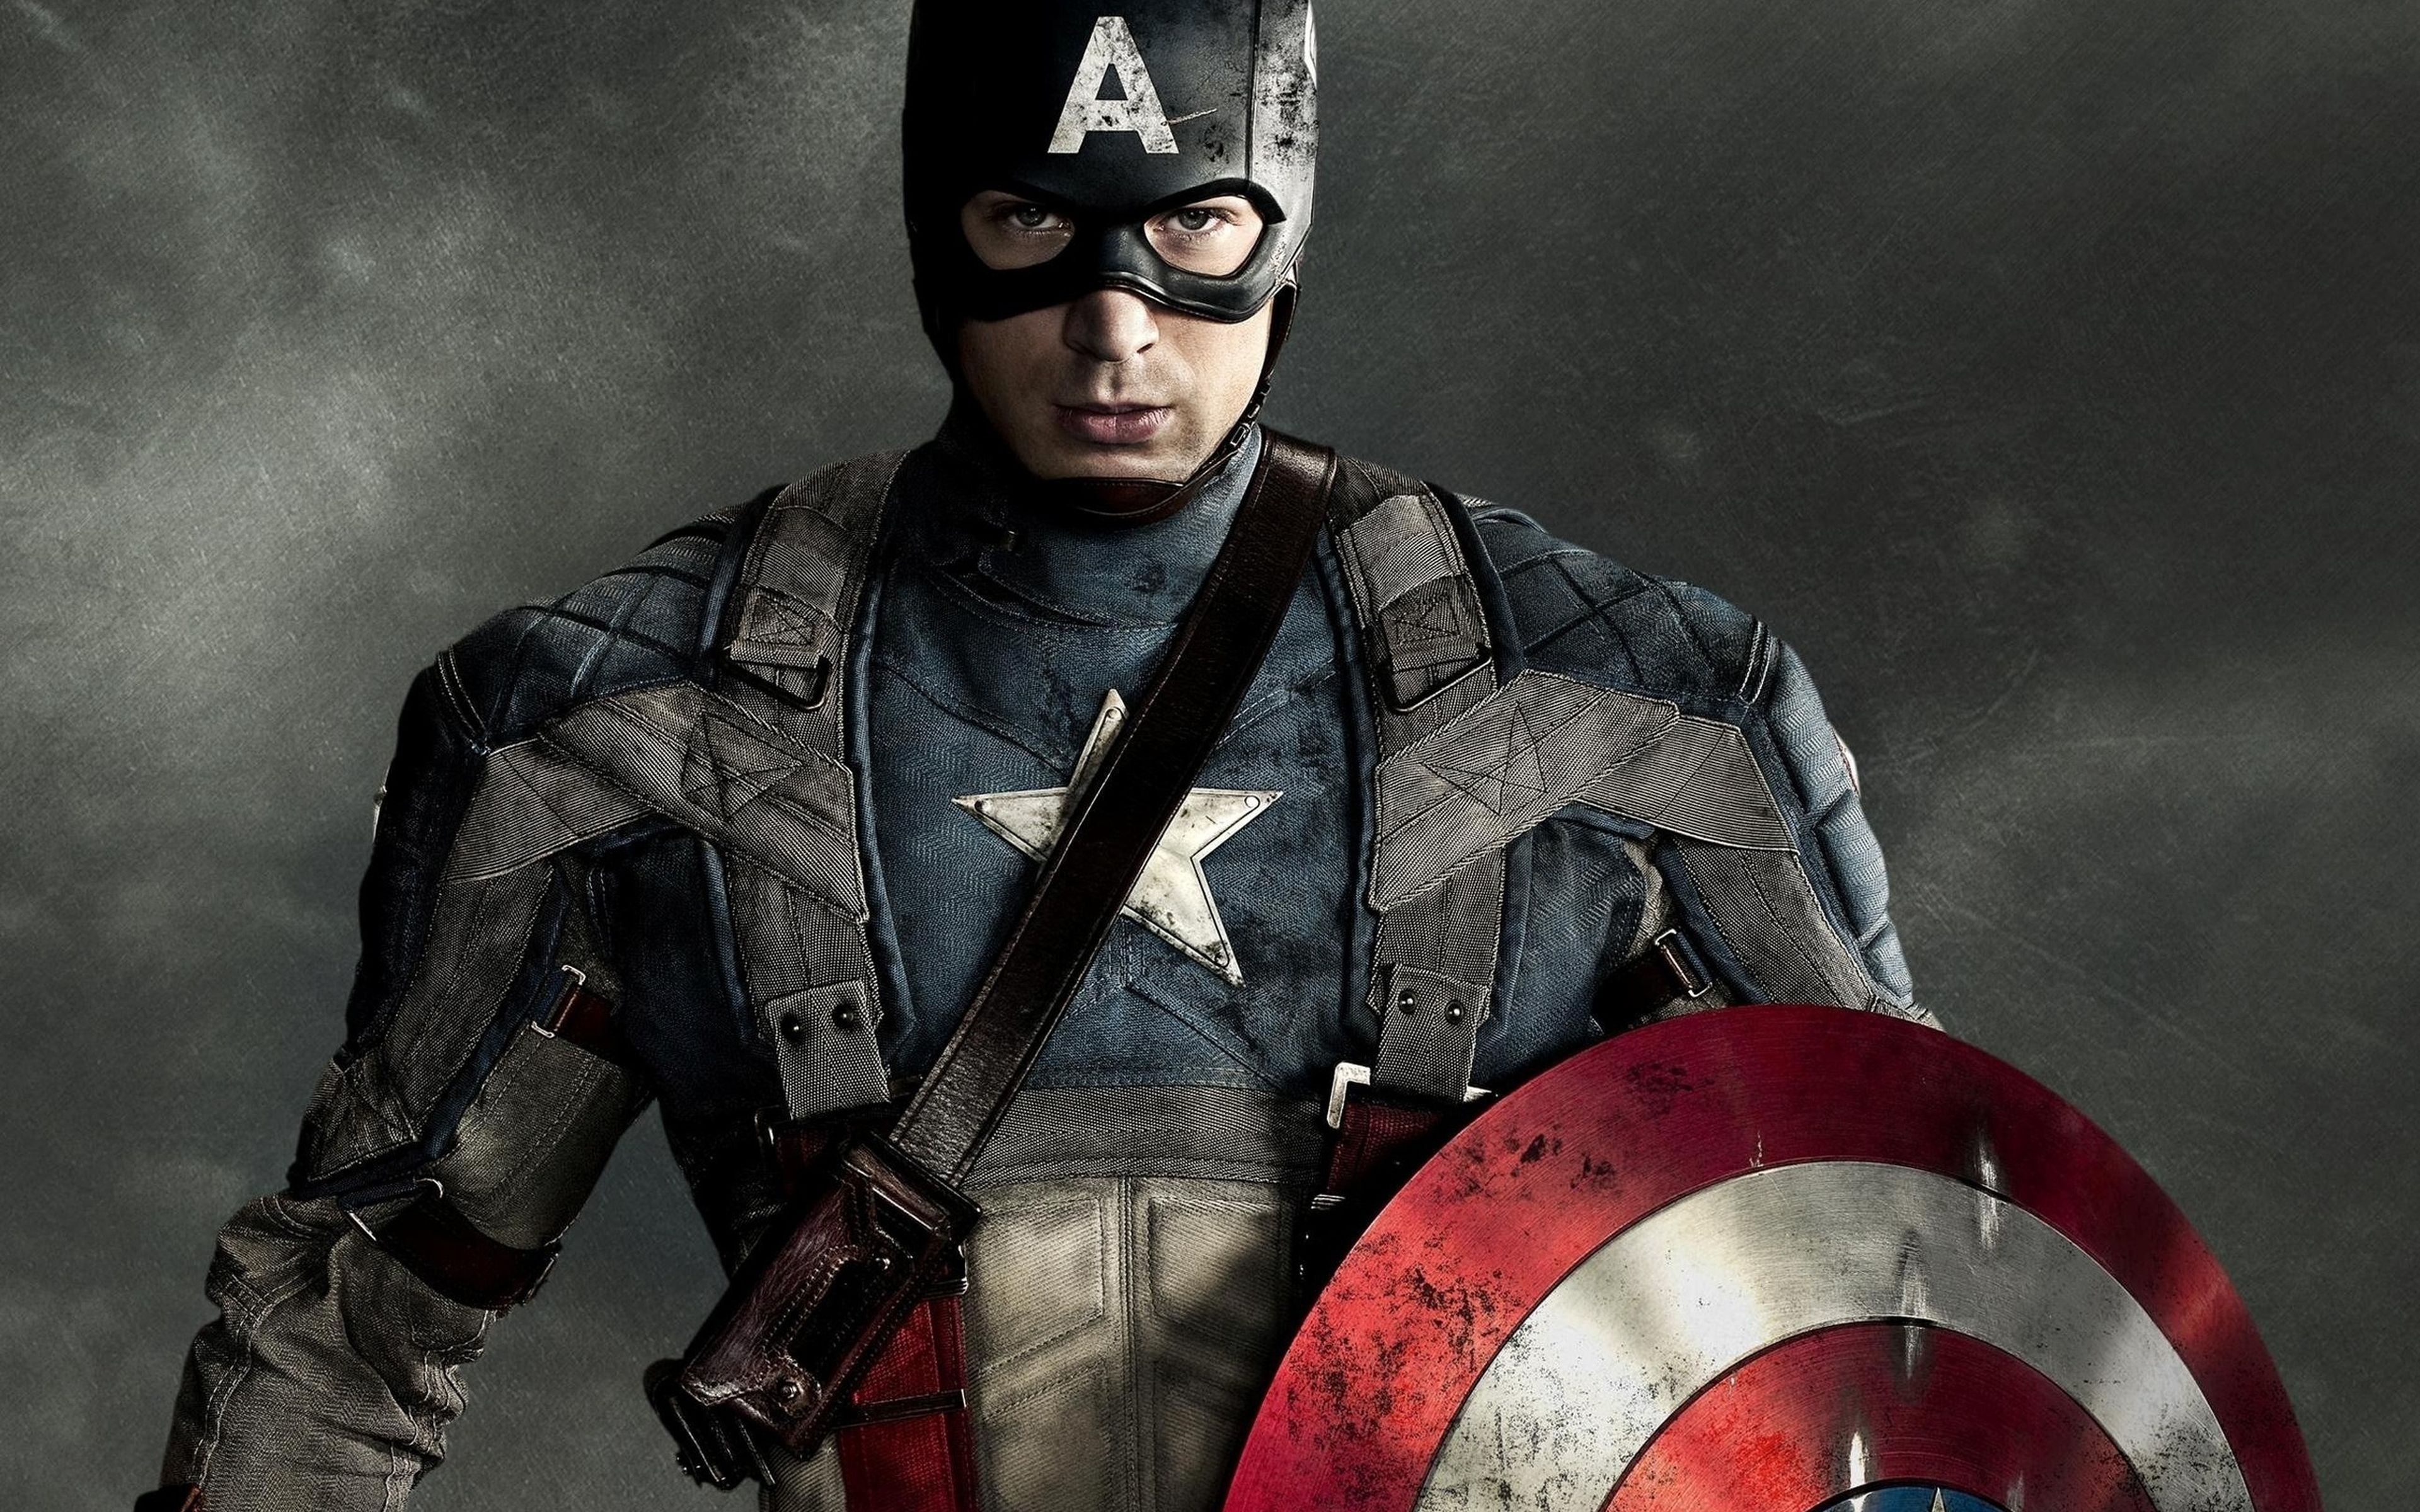 Cine de superhéroes: Crítica de Capitán América El primer vengador